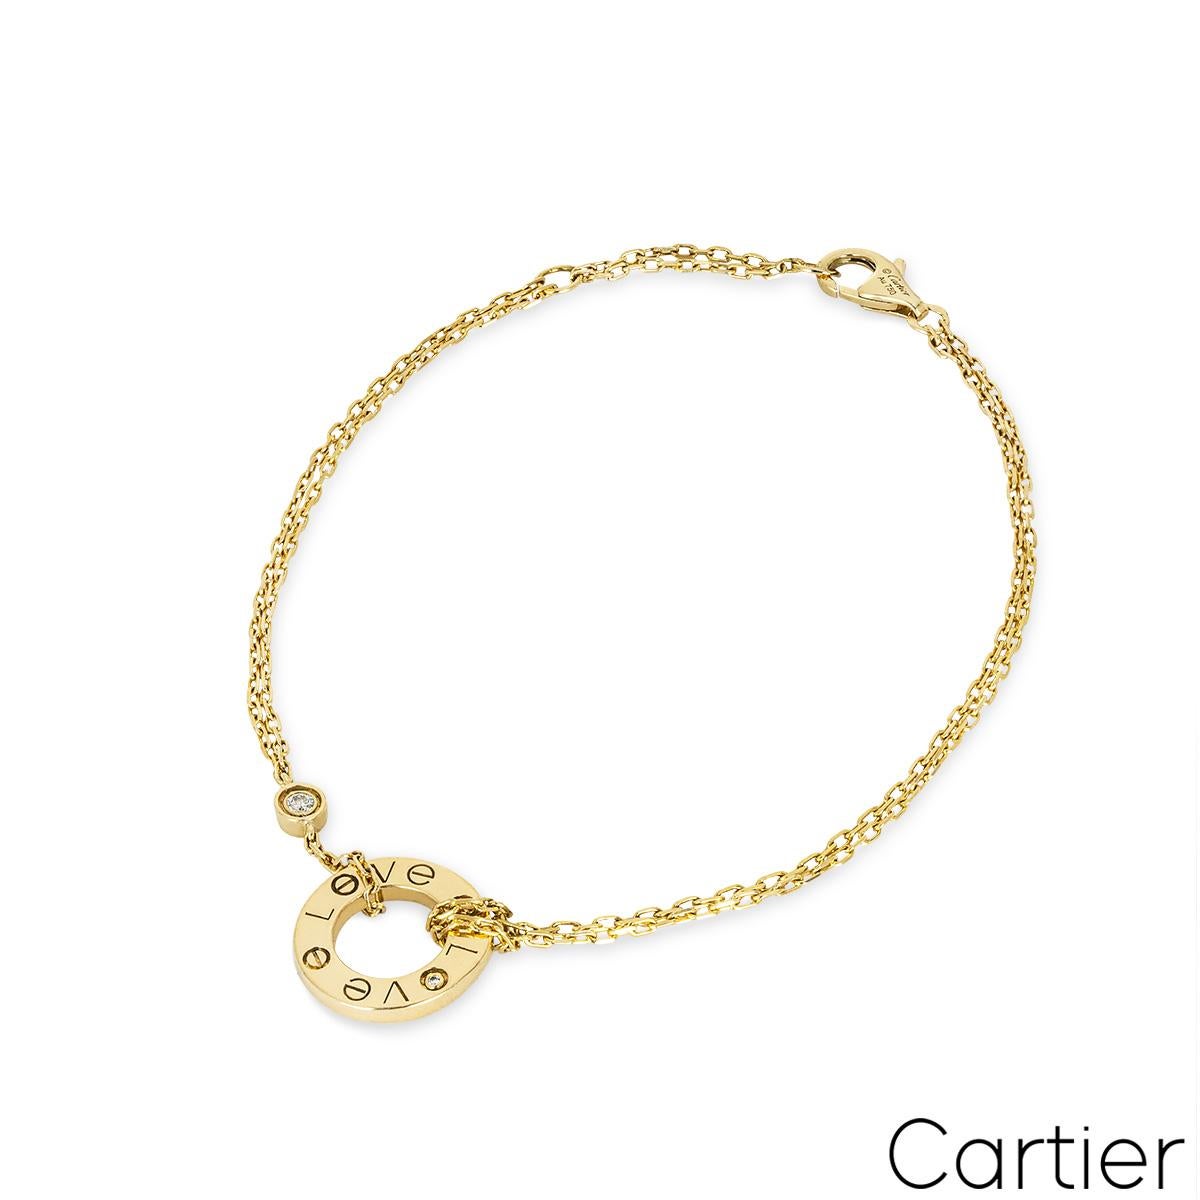 Un bracelet en or jaune 18 carats de Cartier de la collection Love. Le bracelet présente un double bracelet en or jaune noué à un motif circulaire ouvert gravé de 